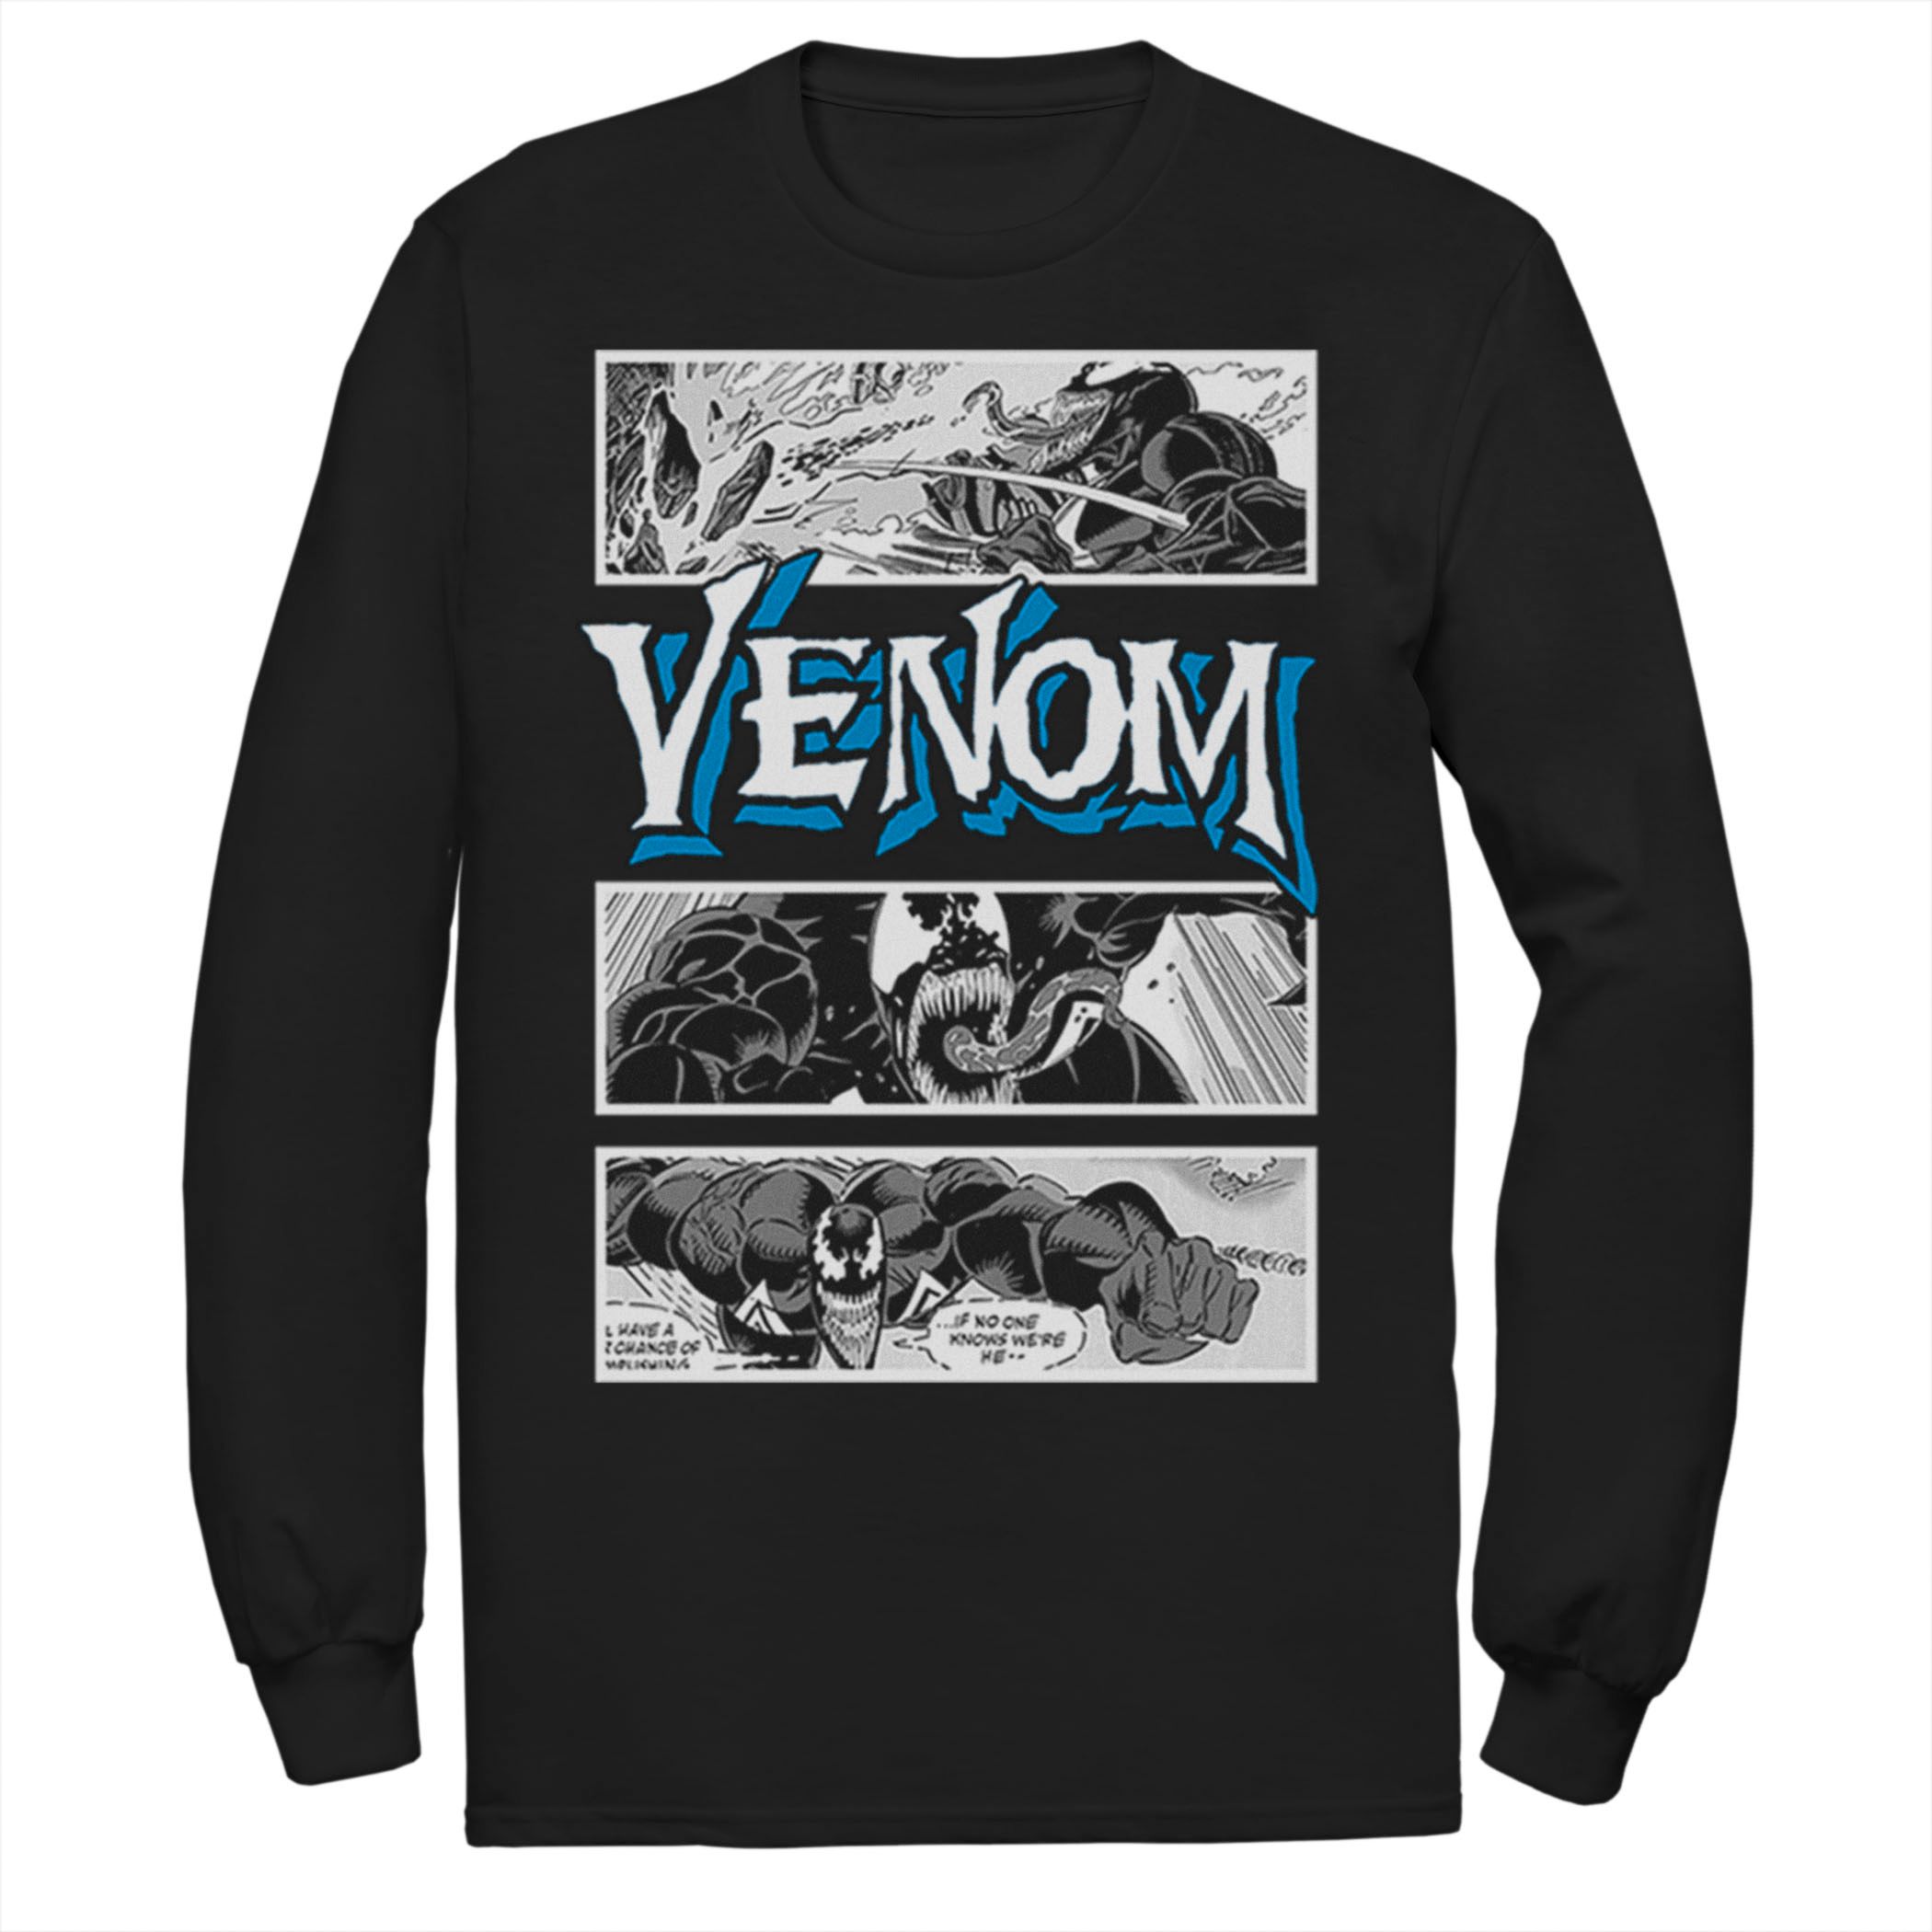 Мужская футболка Marvel Venom Licensed Character